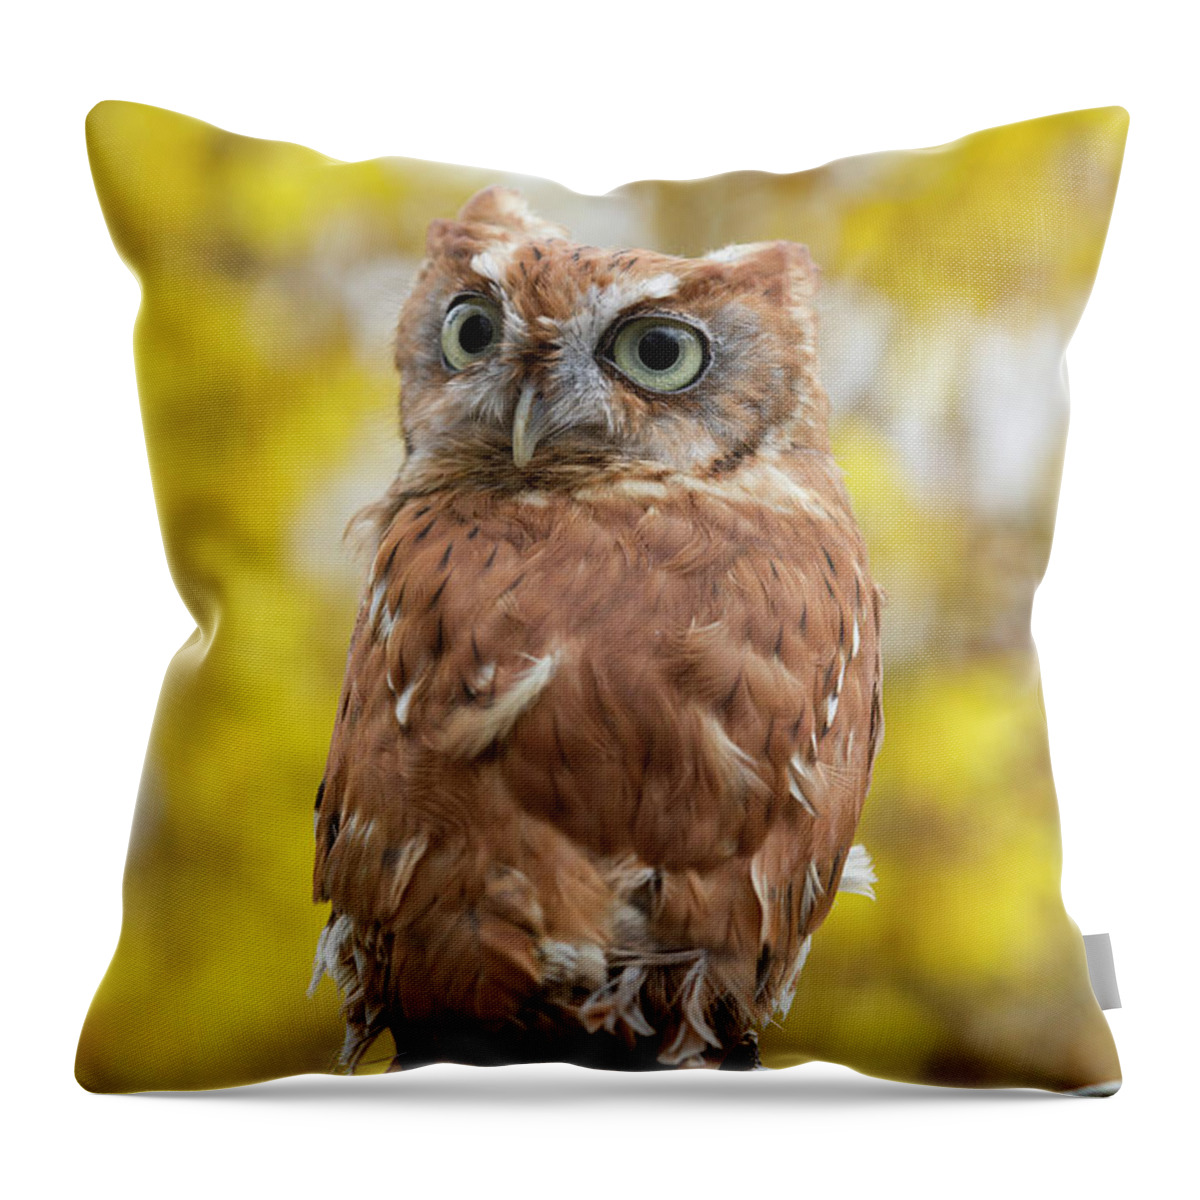 Screech Owl Throw Pillow featuring the photograph Screech Owl 1 by Chris Scroggins